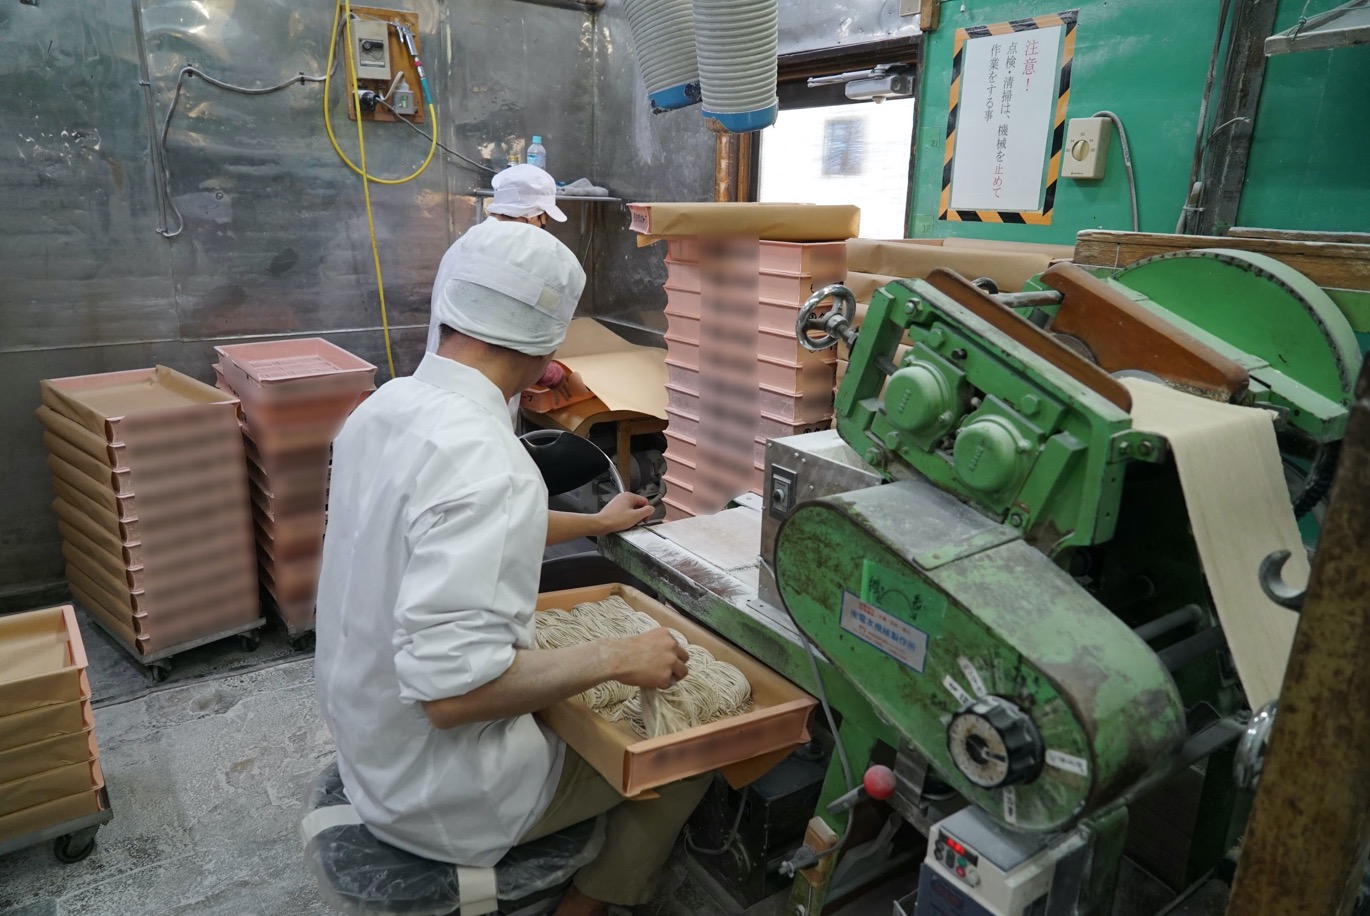 【製麺会社で製造】日本で働くミャンマー人インタビュー